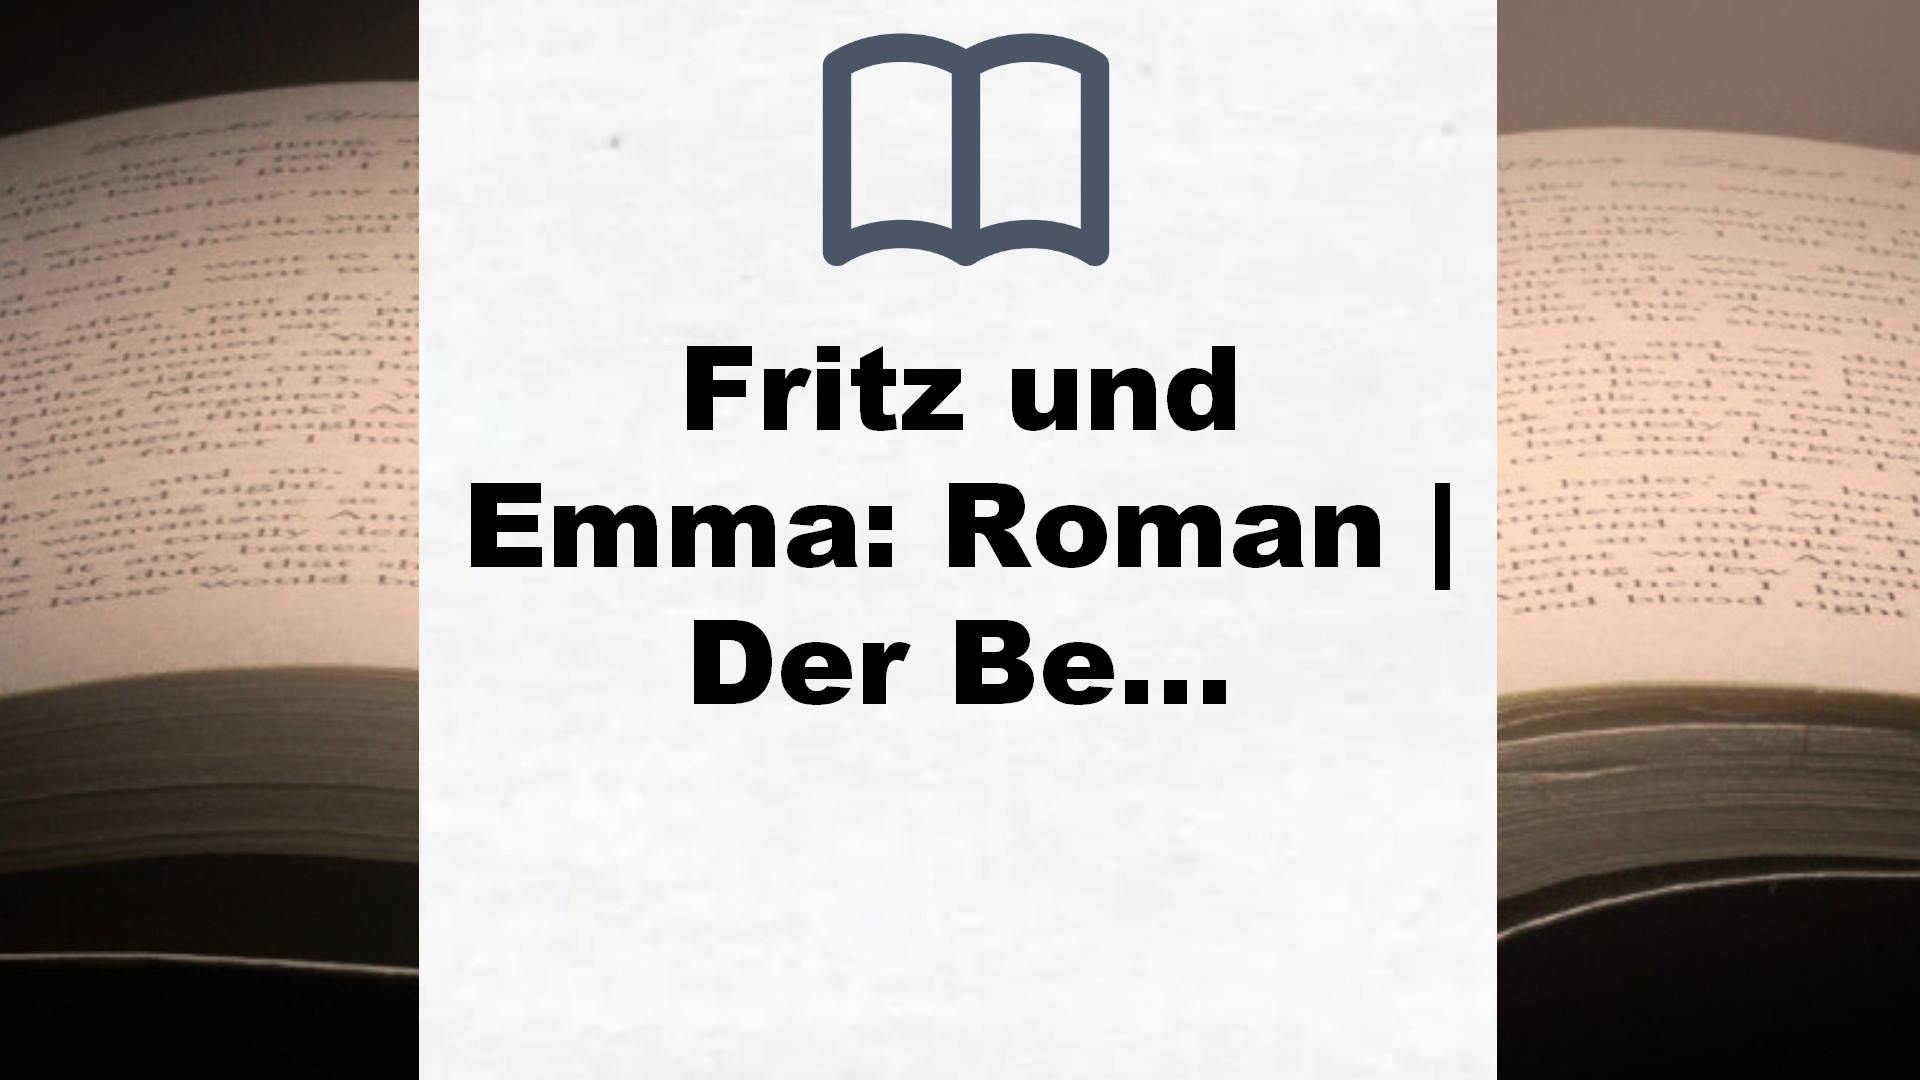 Fritz und Emma: Roman | Der Bestseller. Die schönste Liebesgeschichte des Jahres – Buchrezension